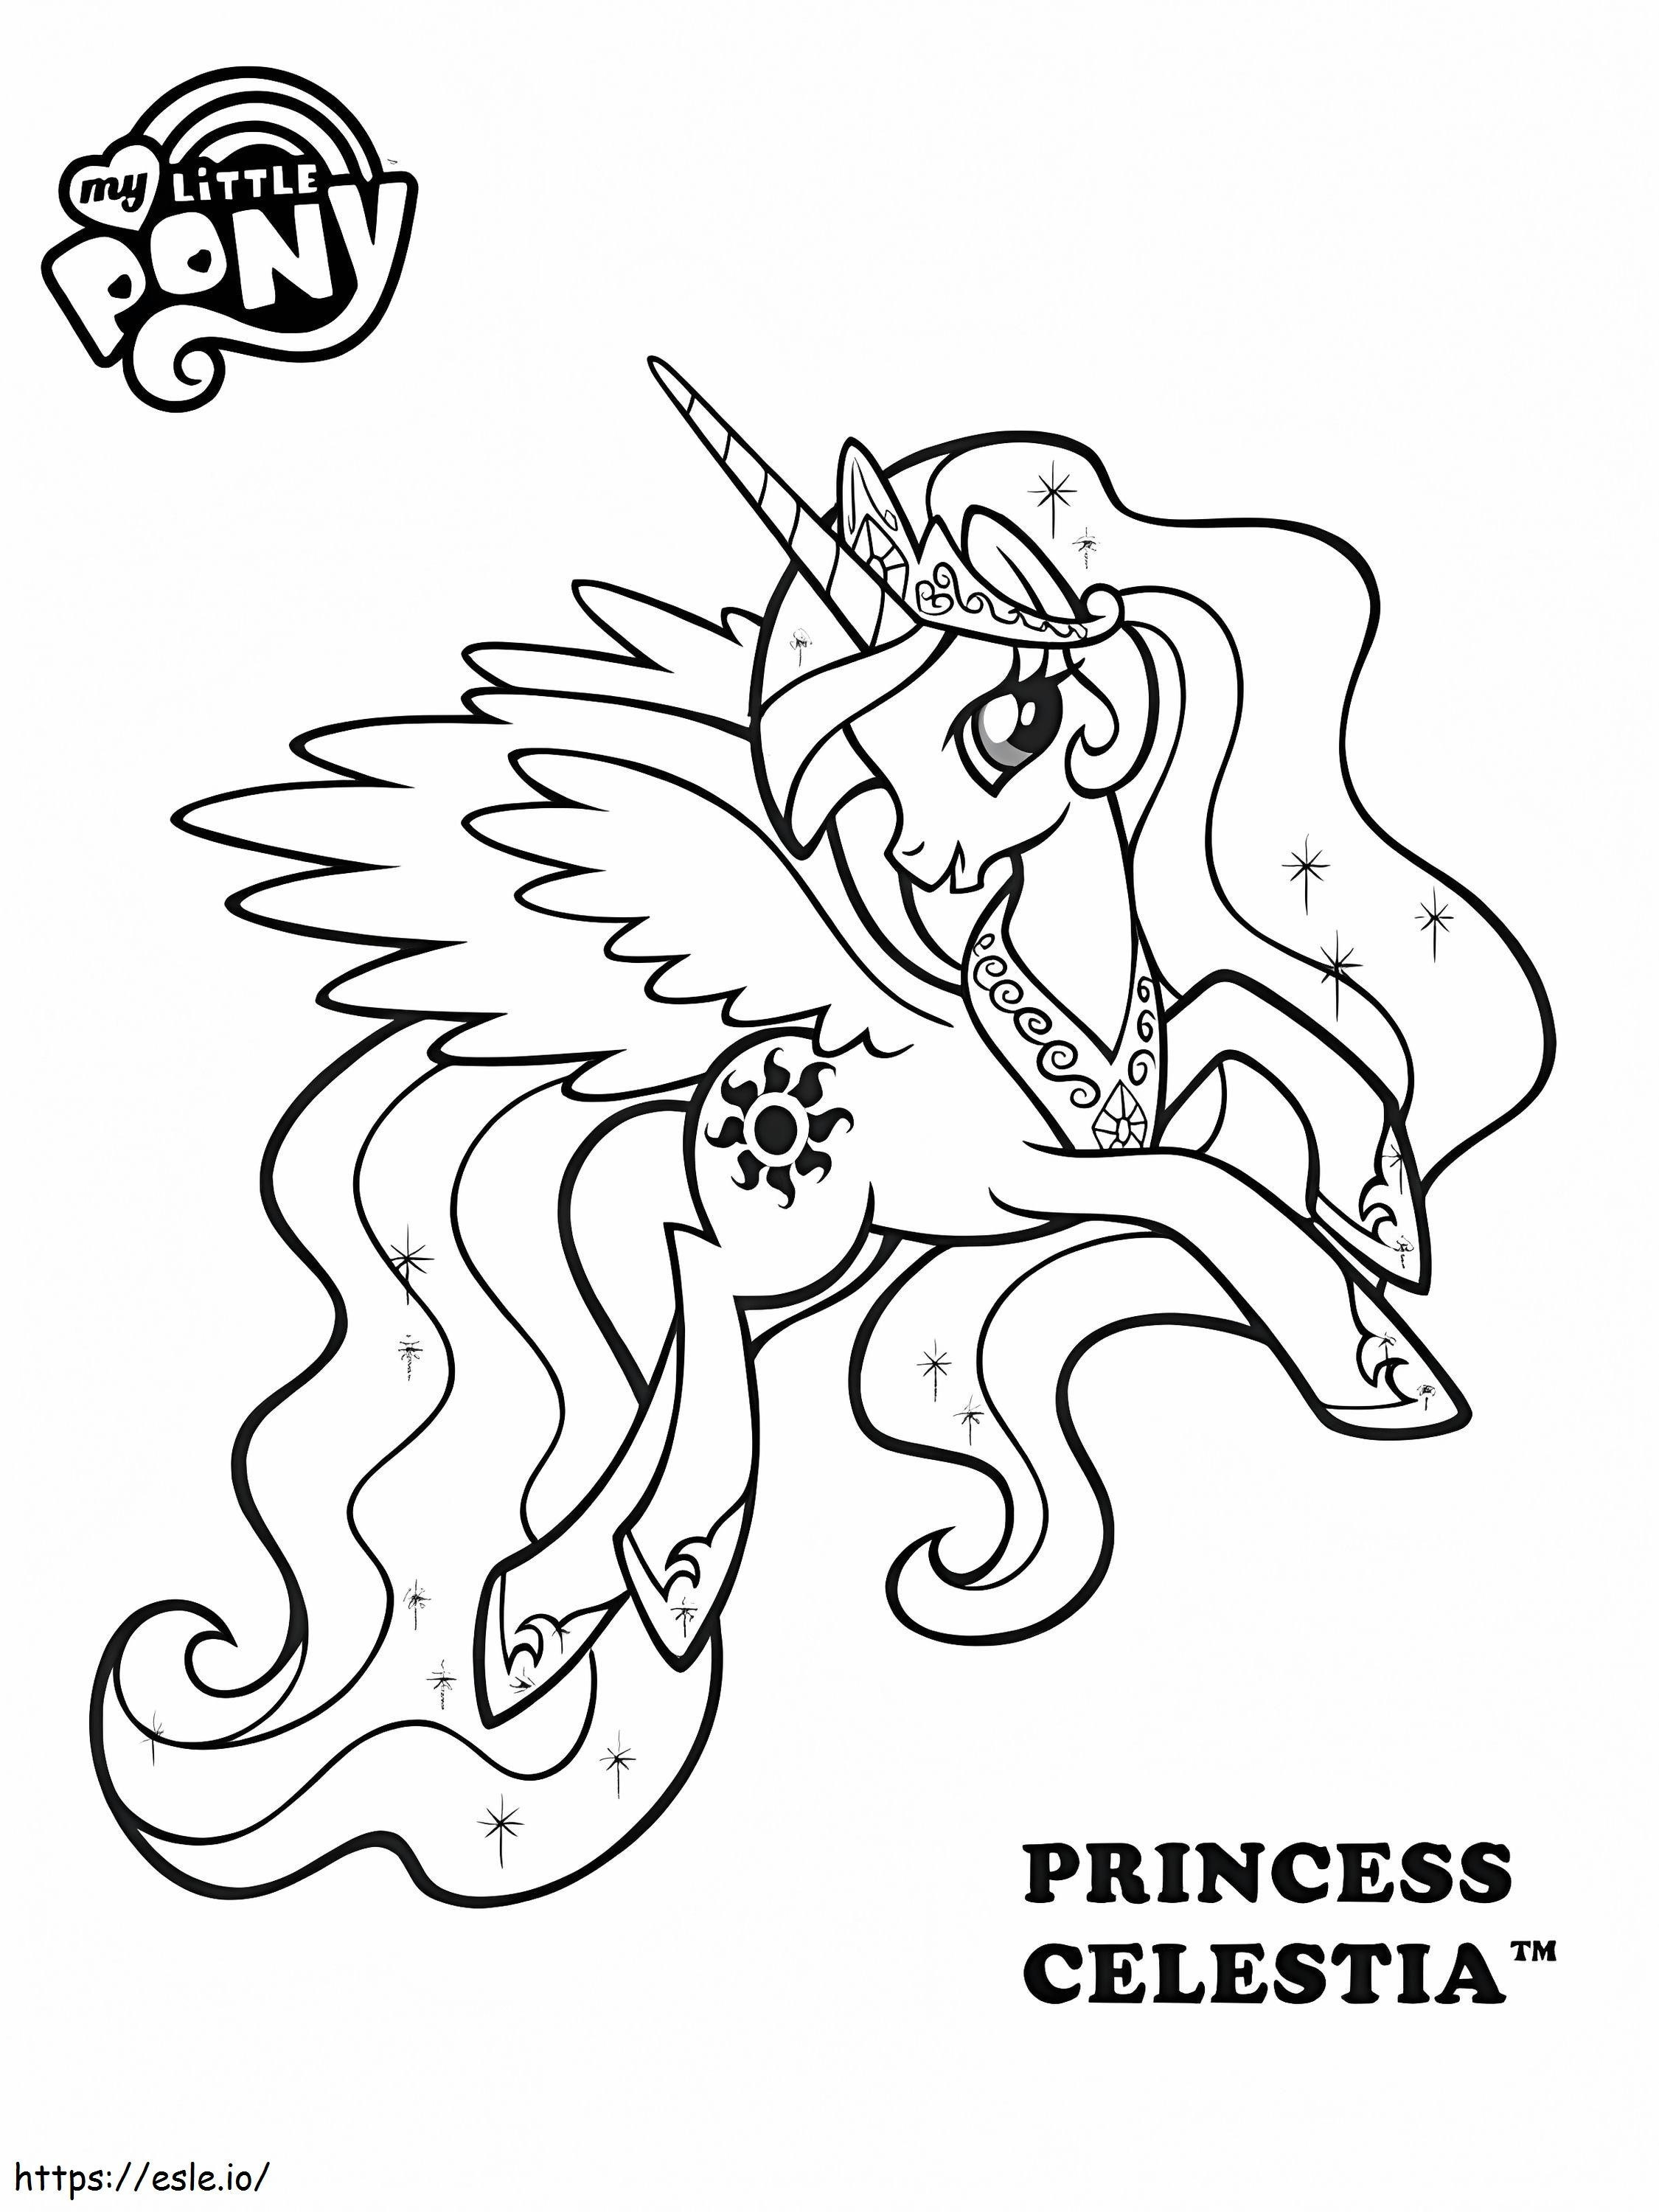 Süße Prinzessin Celestia ausmalbilder